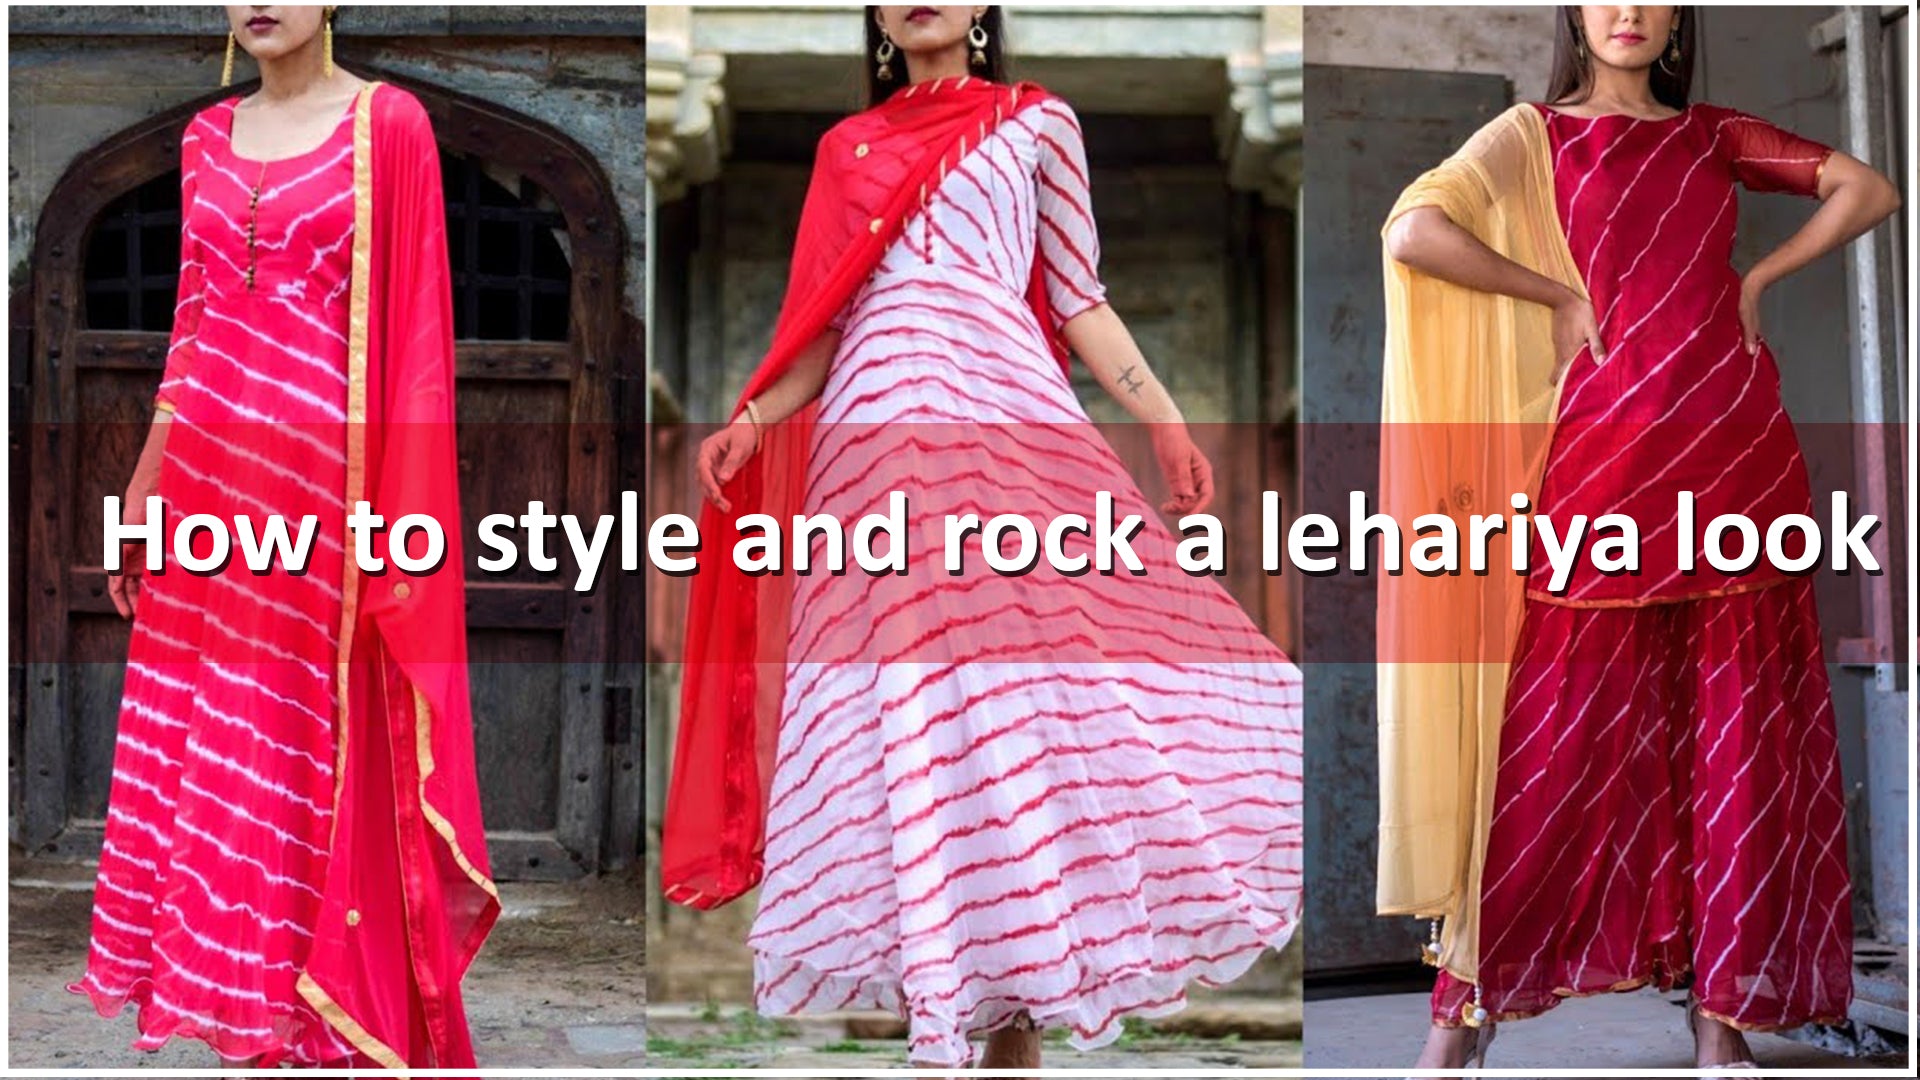 Lehariya fashion edit: How to style and rock a lehariya look